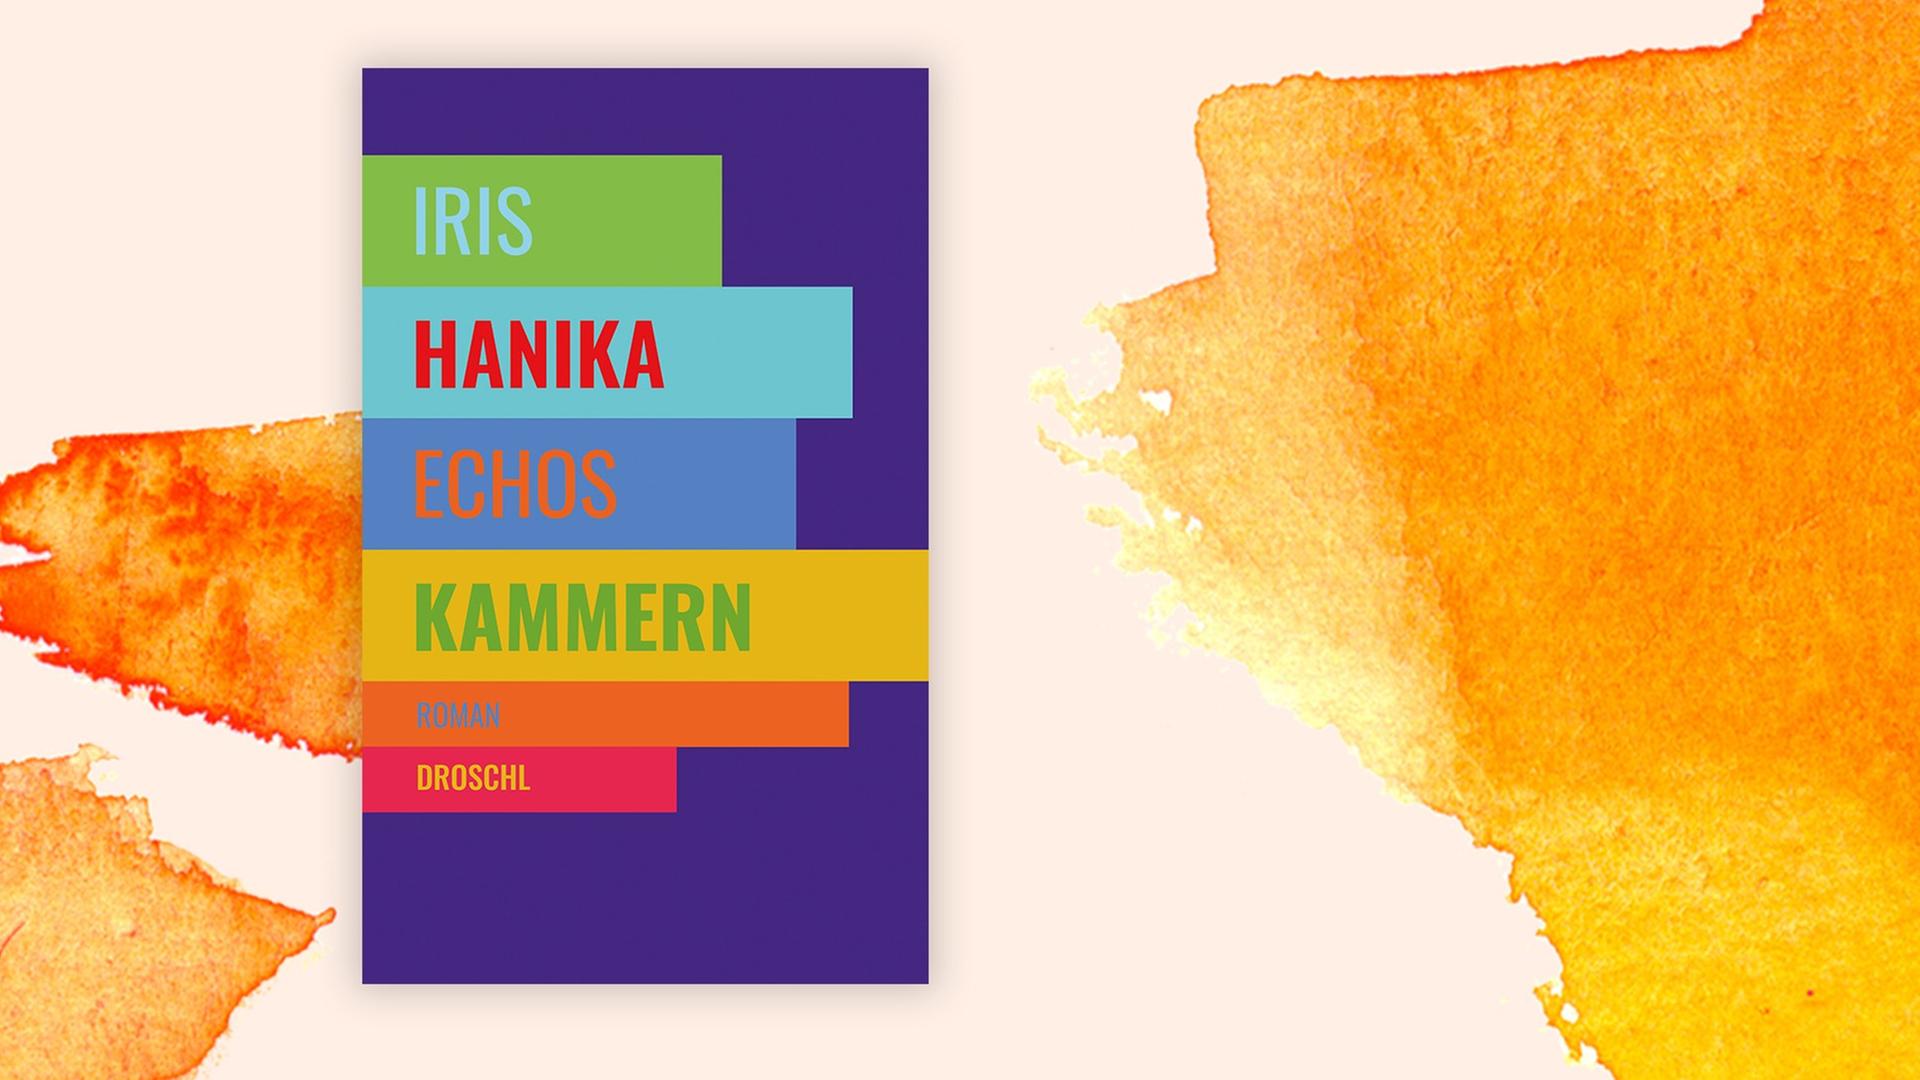 Das Covermotiv von Iris Hanik Echos Kammern besteht aus verschieden farbigen Streifen und steht auf pastellfarbenem Hintergrund